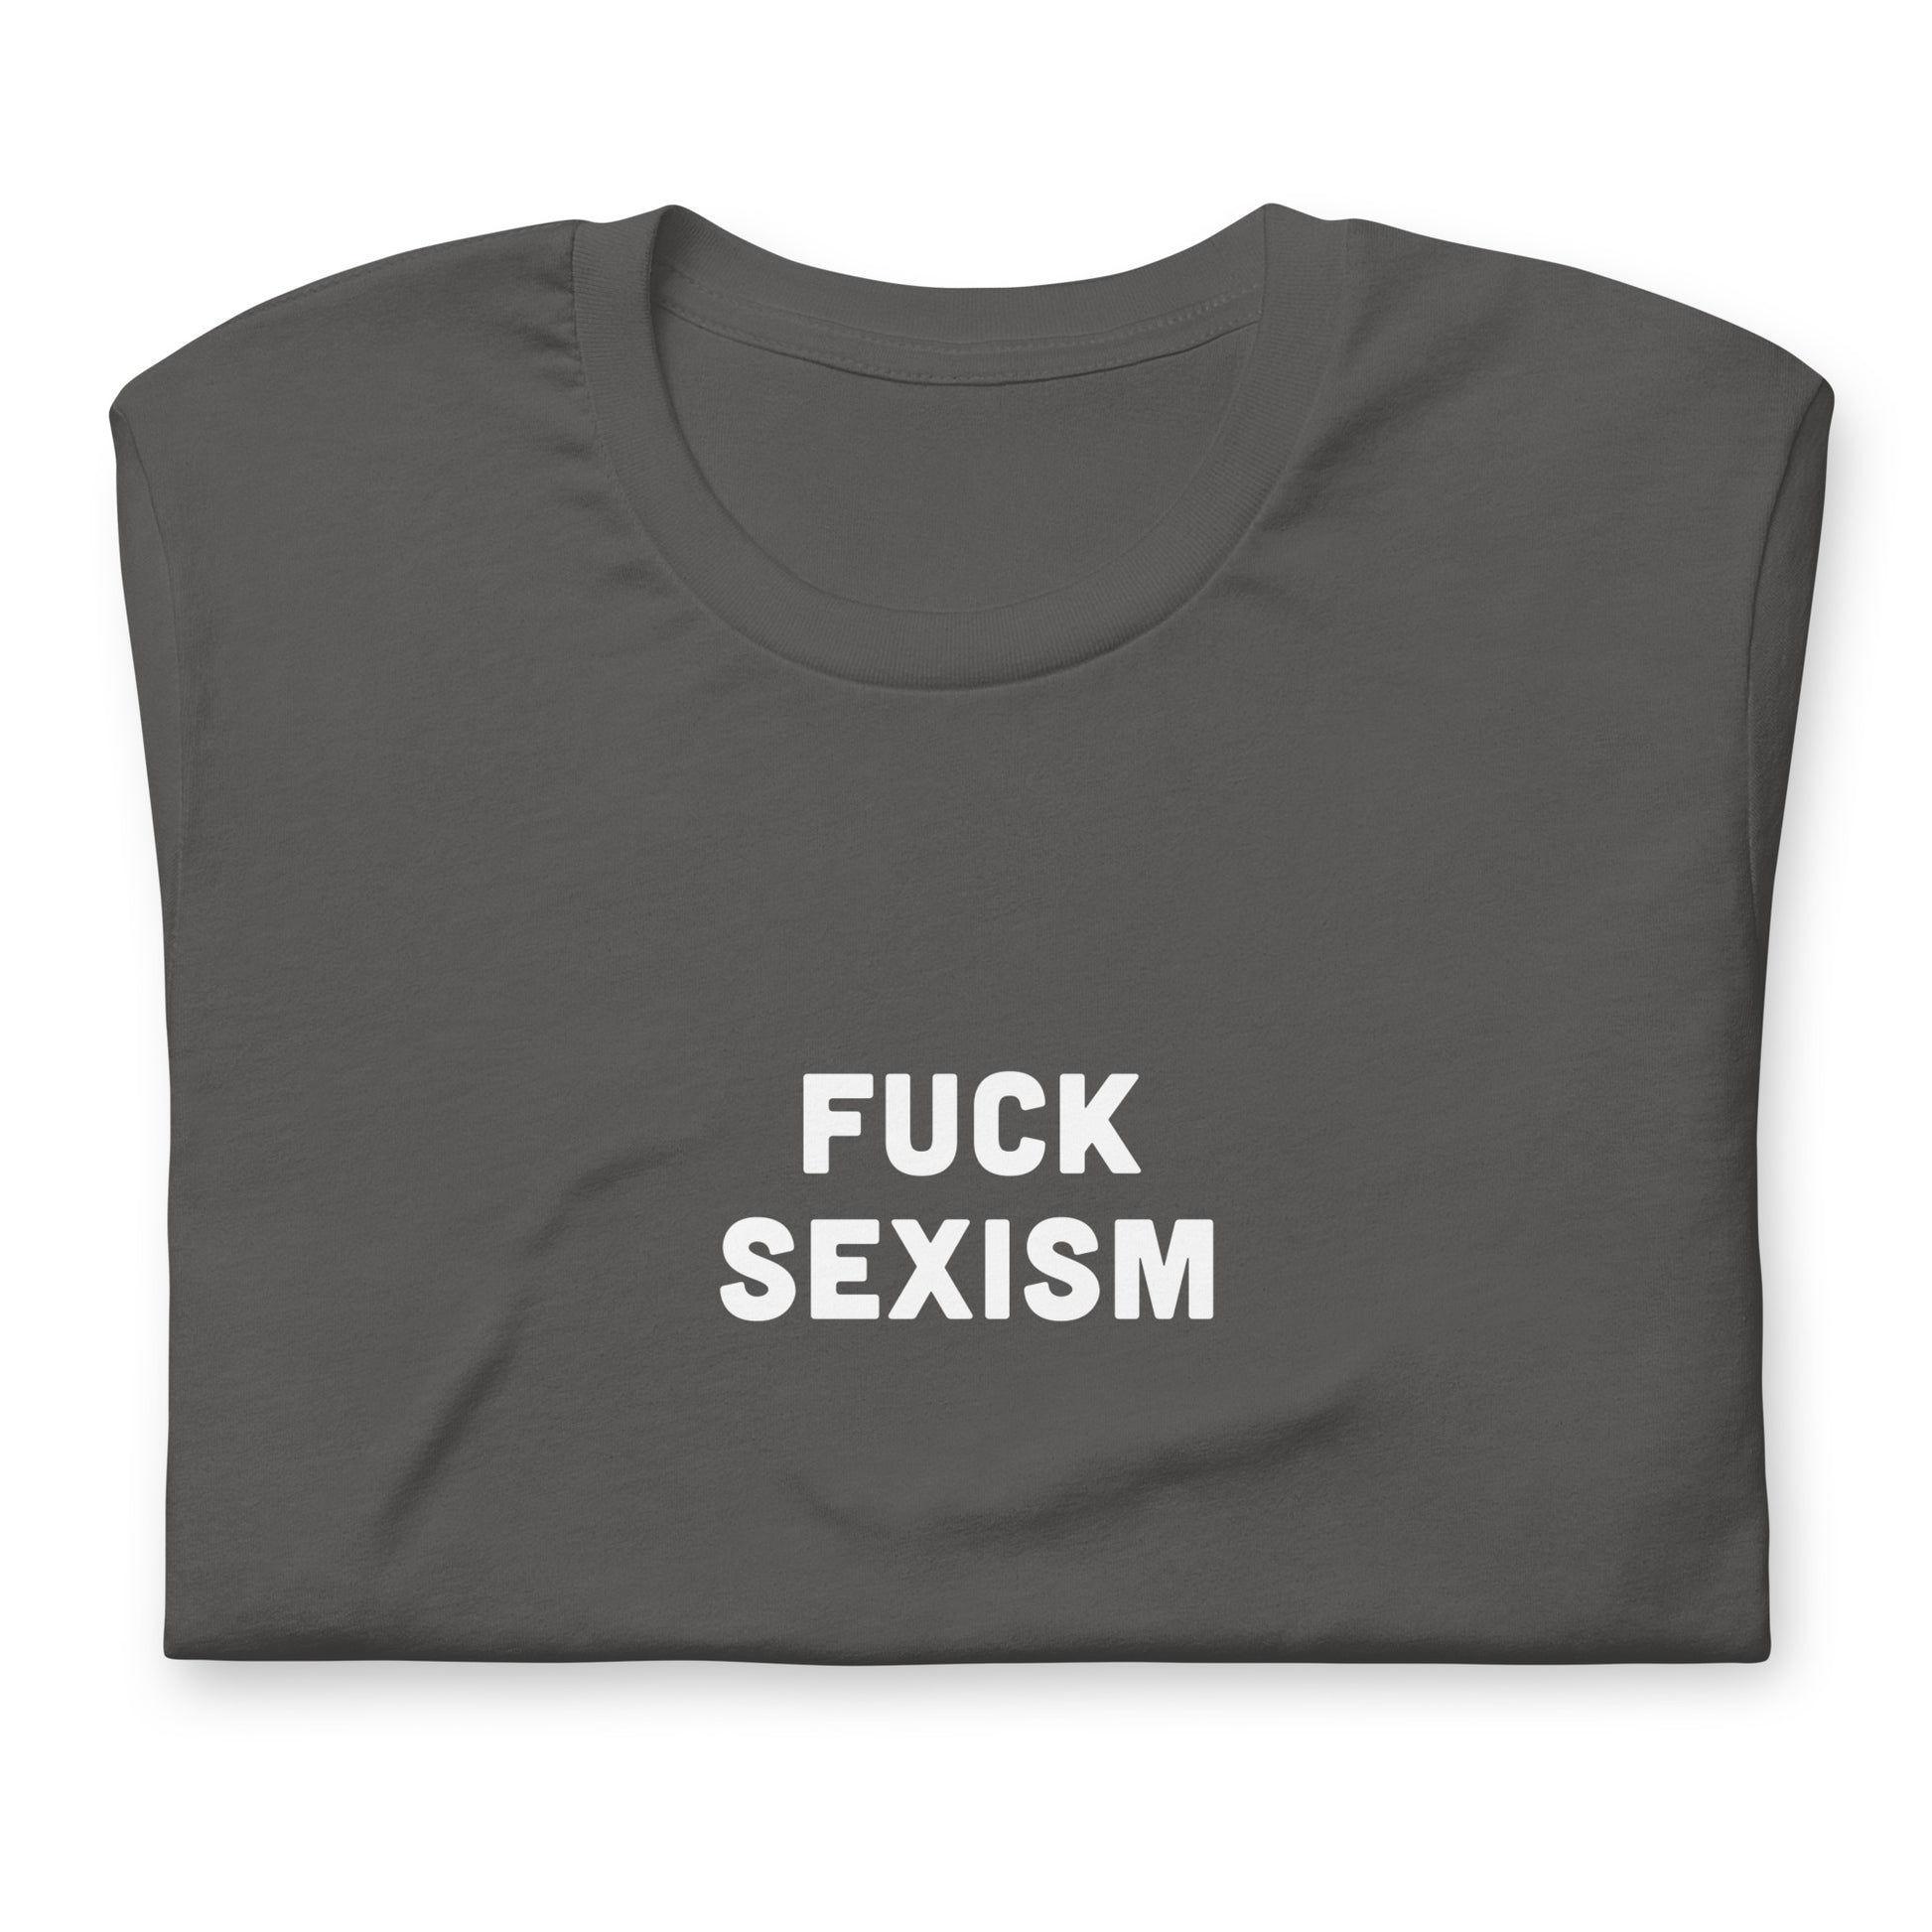 Fuck Sexism T-Shirt Size 2XL Color Black